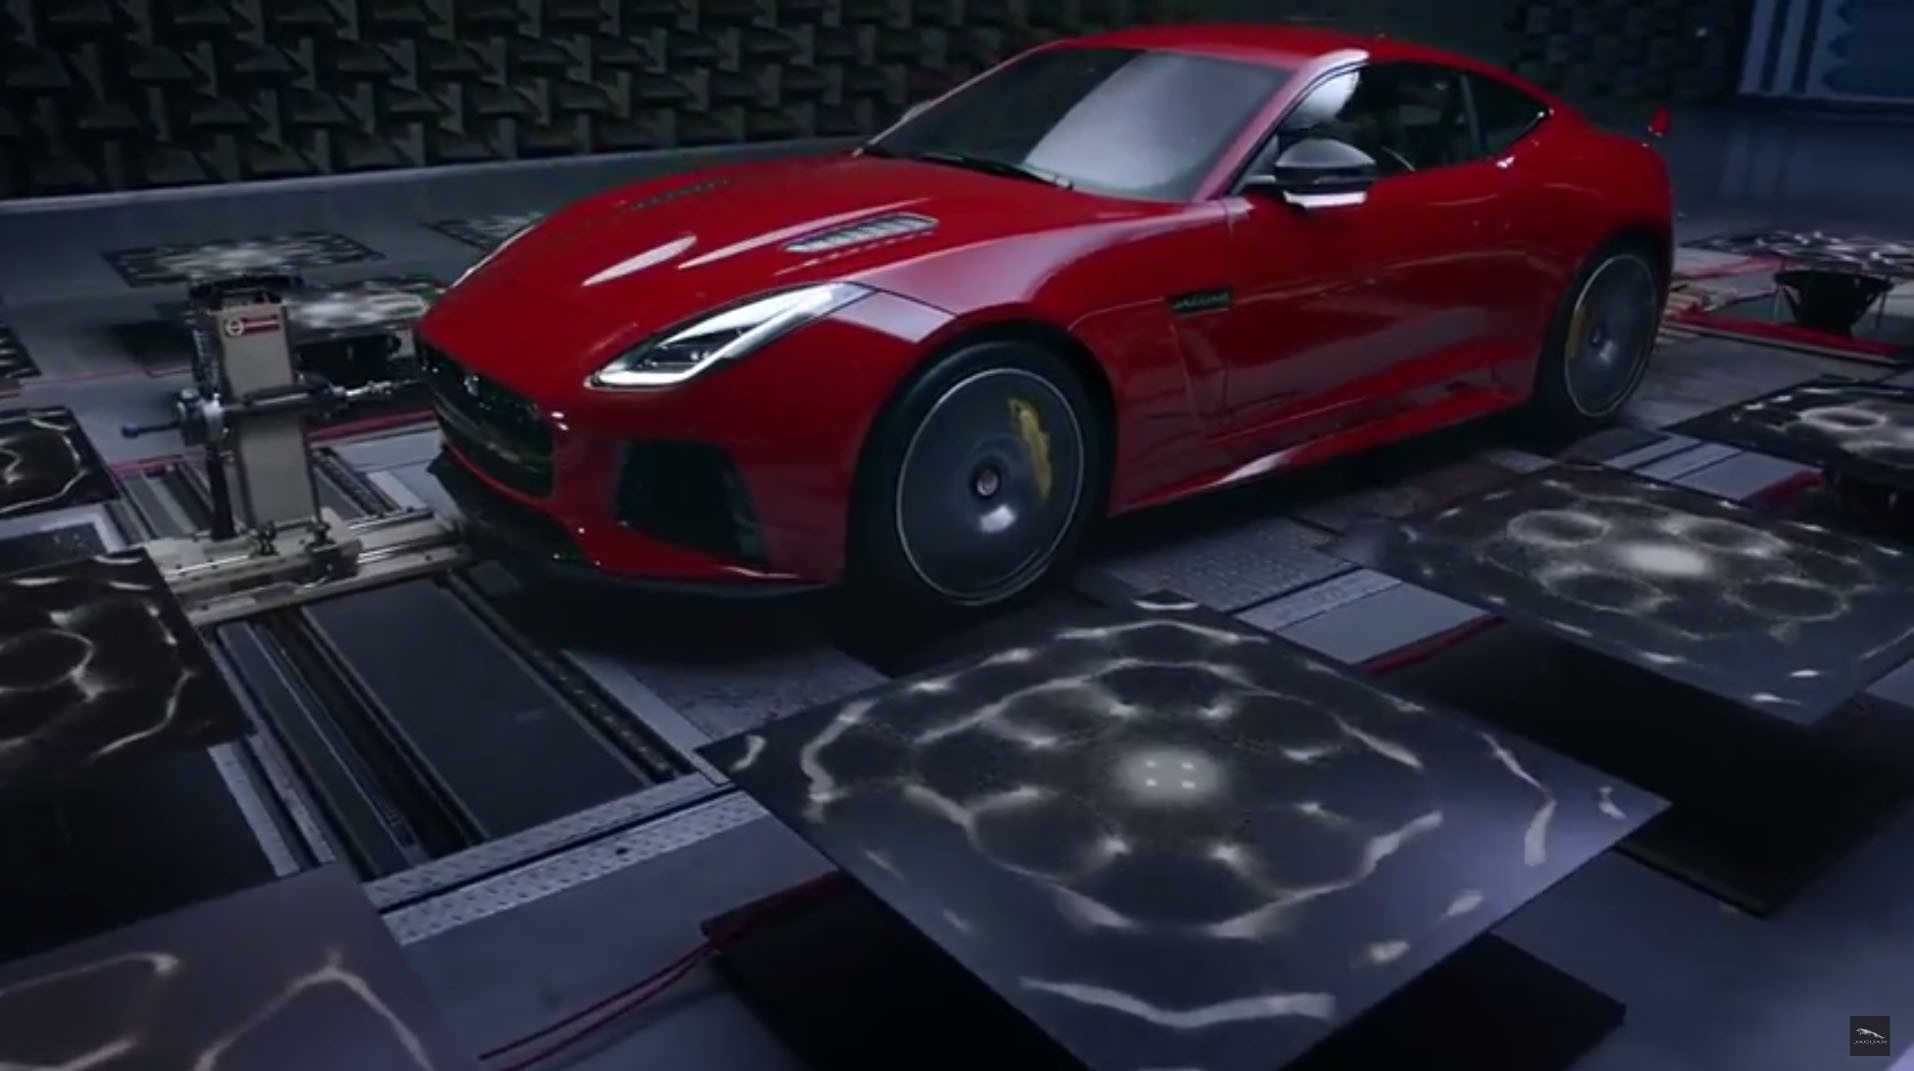 Jaguar Factory F-Type SVR Race Car Engine Exhaust Sound Video